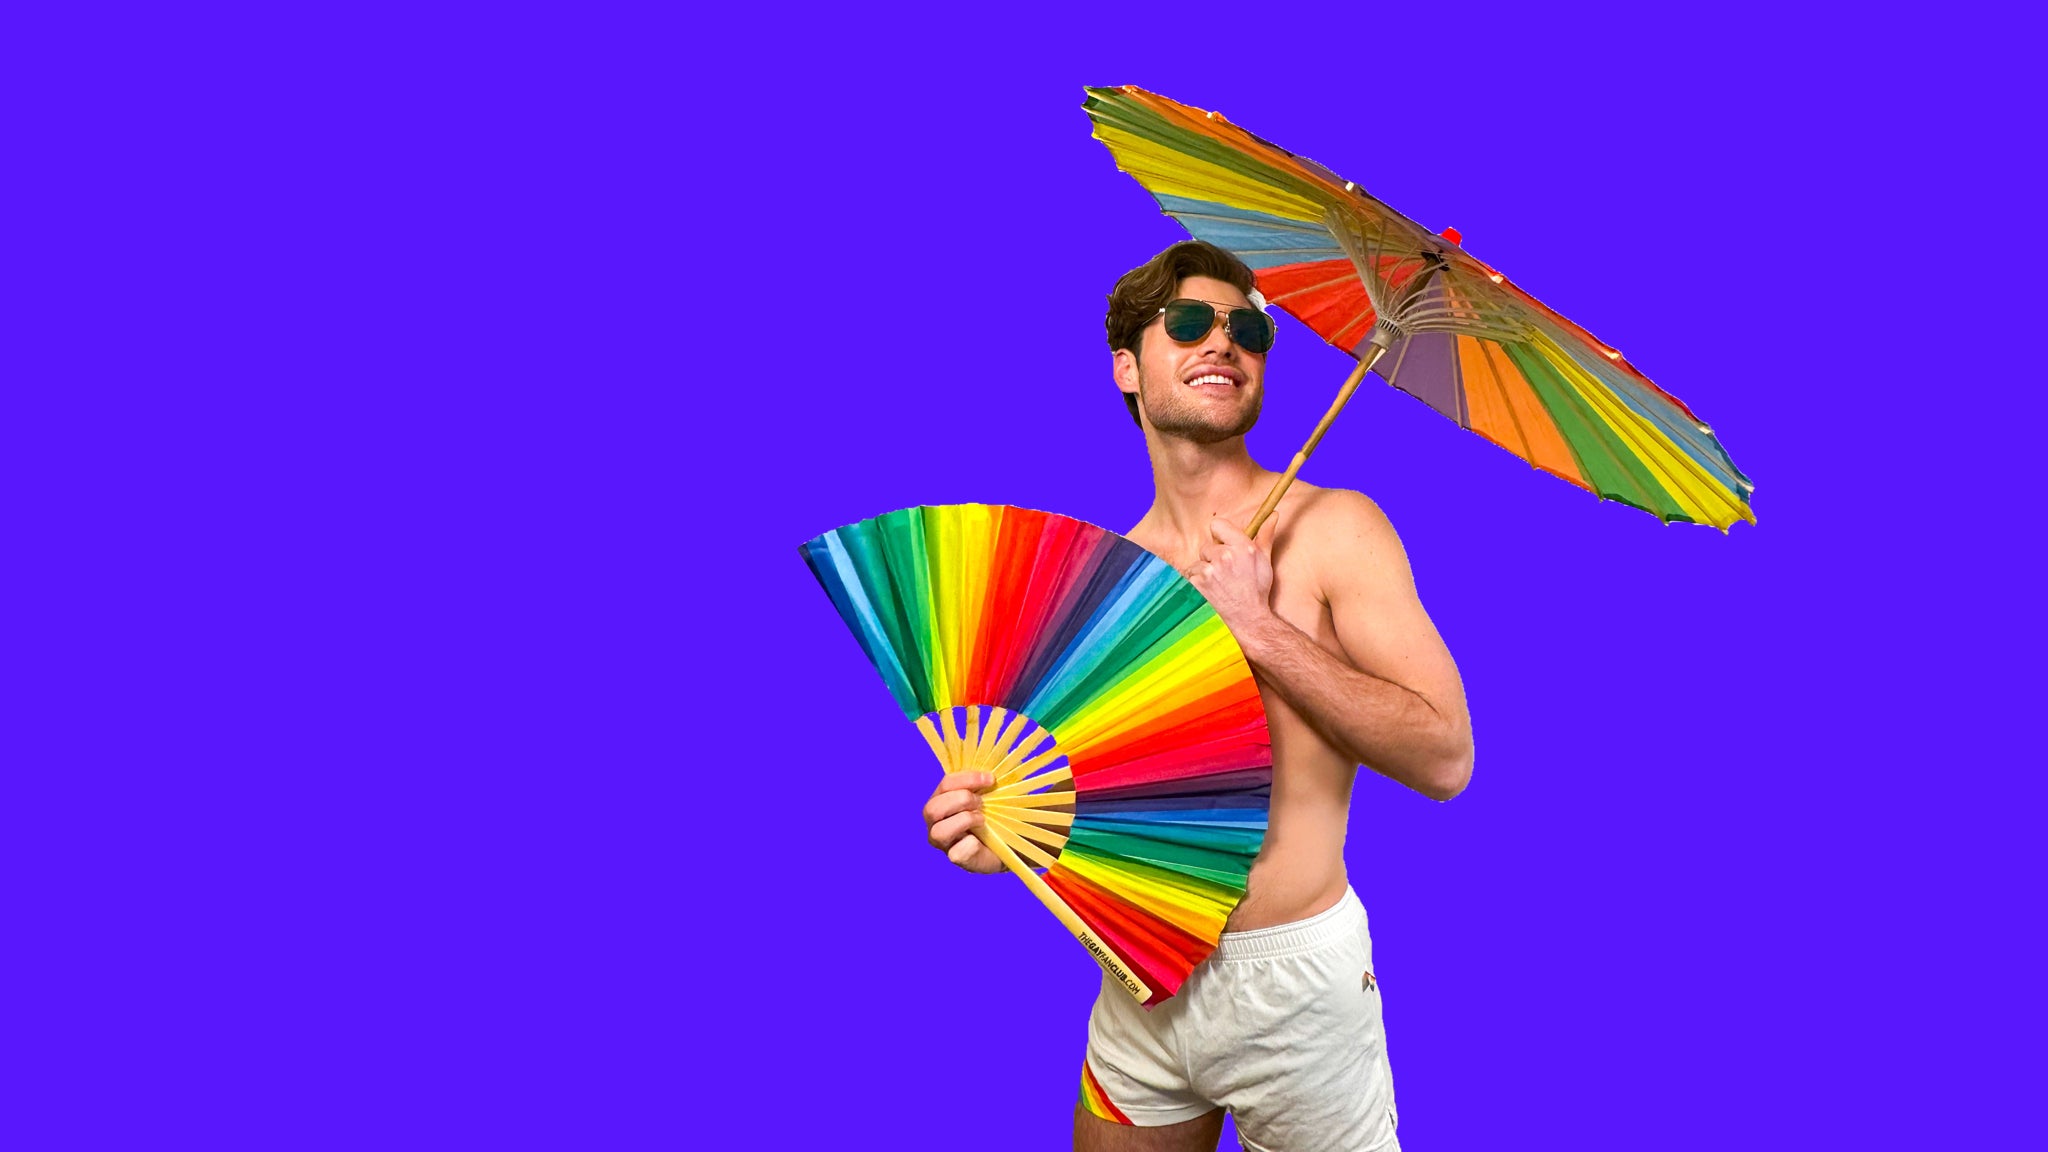 The Pride Hand Fan Shop - Shop best folding fans for Pride - The Gay Fan Club